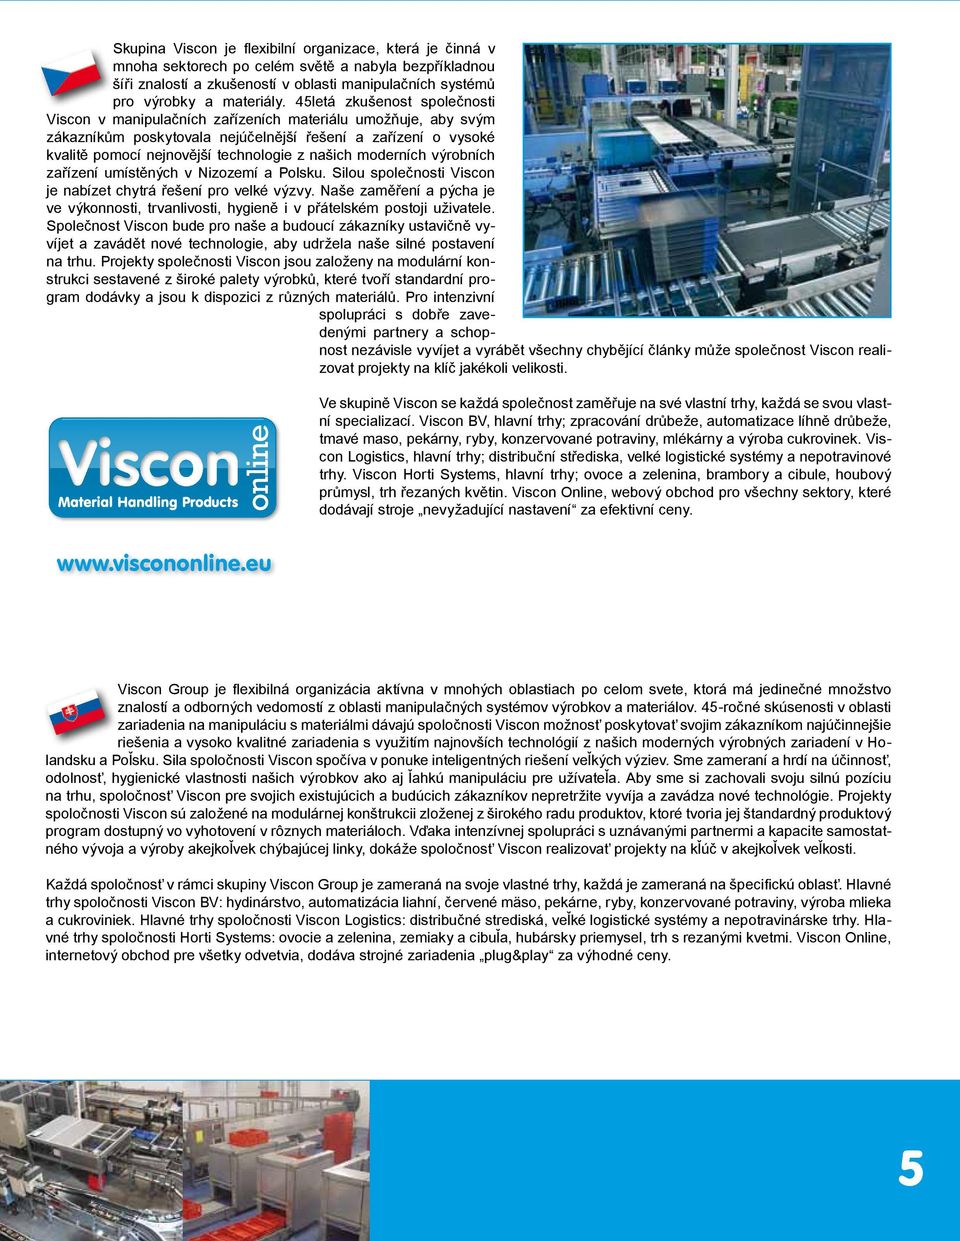 našich moderních výrobních zařízení umístěných v Nizozemí a Polsku. Silou společnosti Viscon je nabízet chytrá řešení pro velké výzvy.